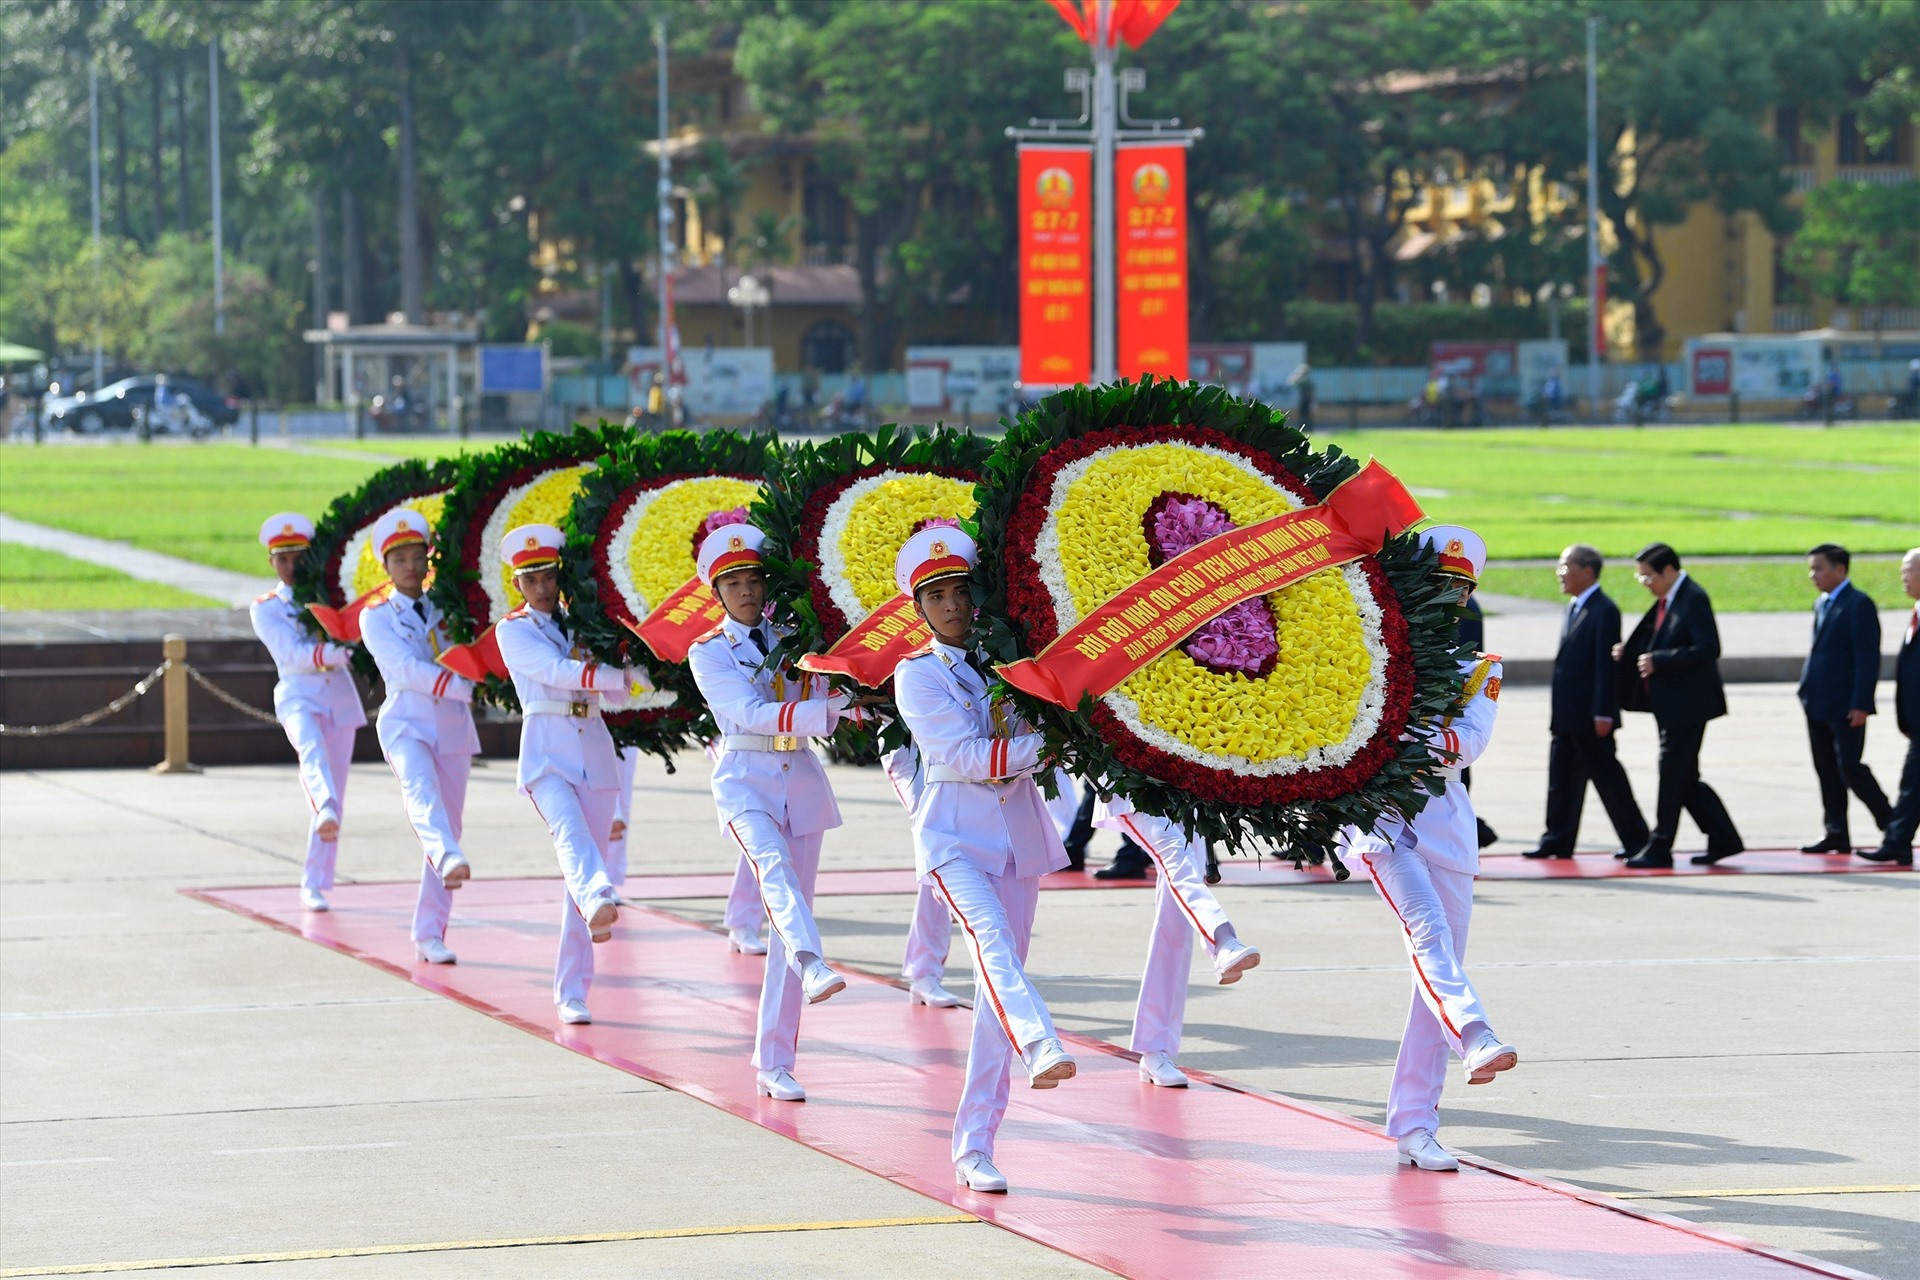  Vòng hoa của Đoàn đại biểu mang dòng chữ: Đời đời nhớ ơn Chủ tịch Hồ Chí Minh vĩ đại. Ảnh: Hải Nguyễn